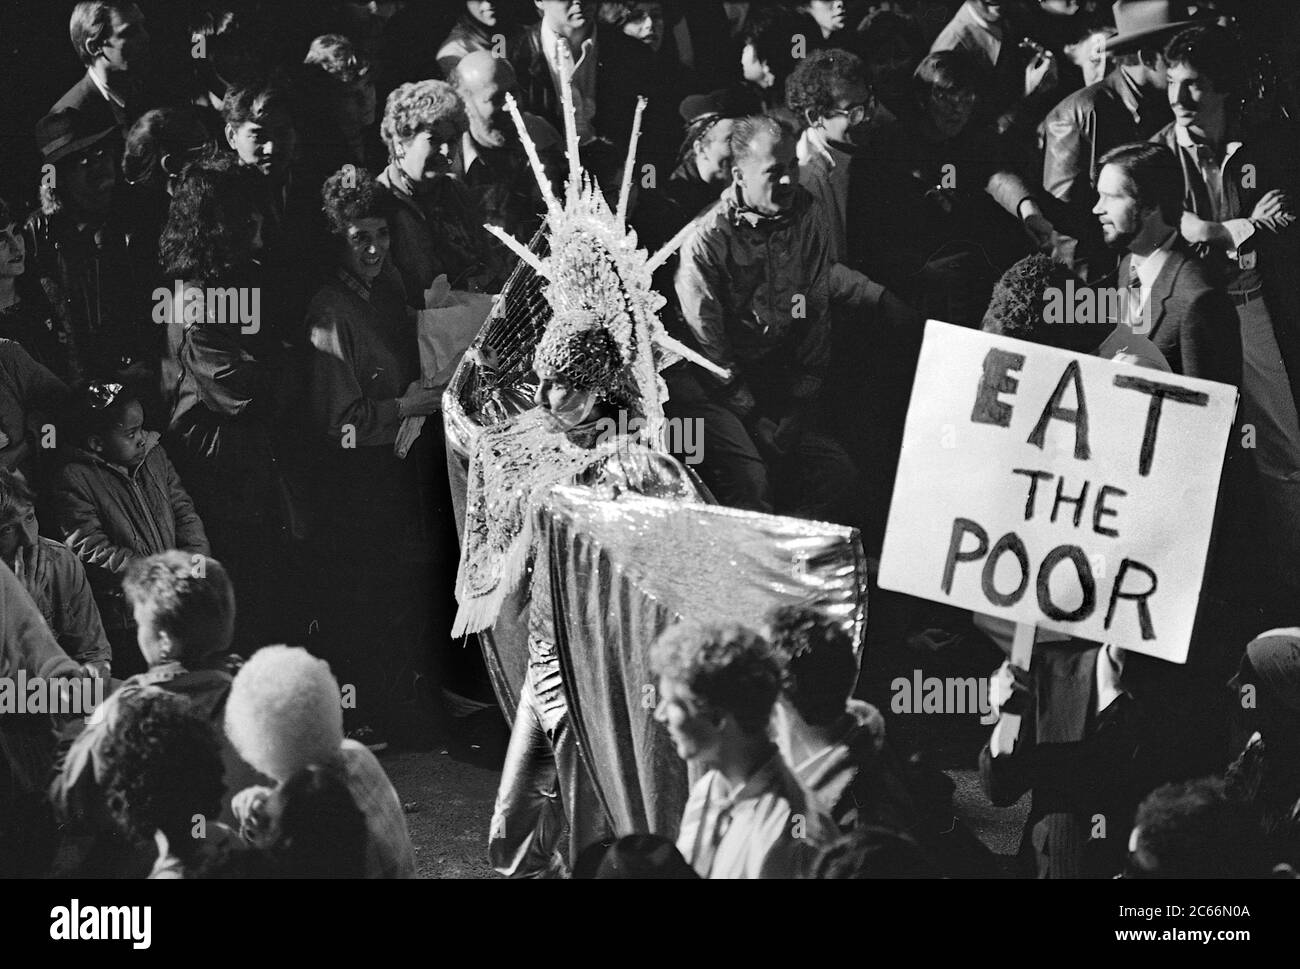 Mangia i costumi poveri al Greenwich Village Halloween Parade, New York City, USA negli anni '80 fotografati con film in bianco e nero di notte. Foto Stock